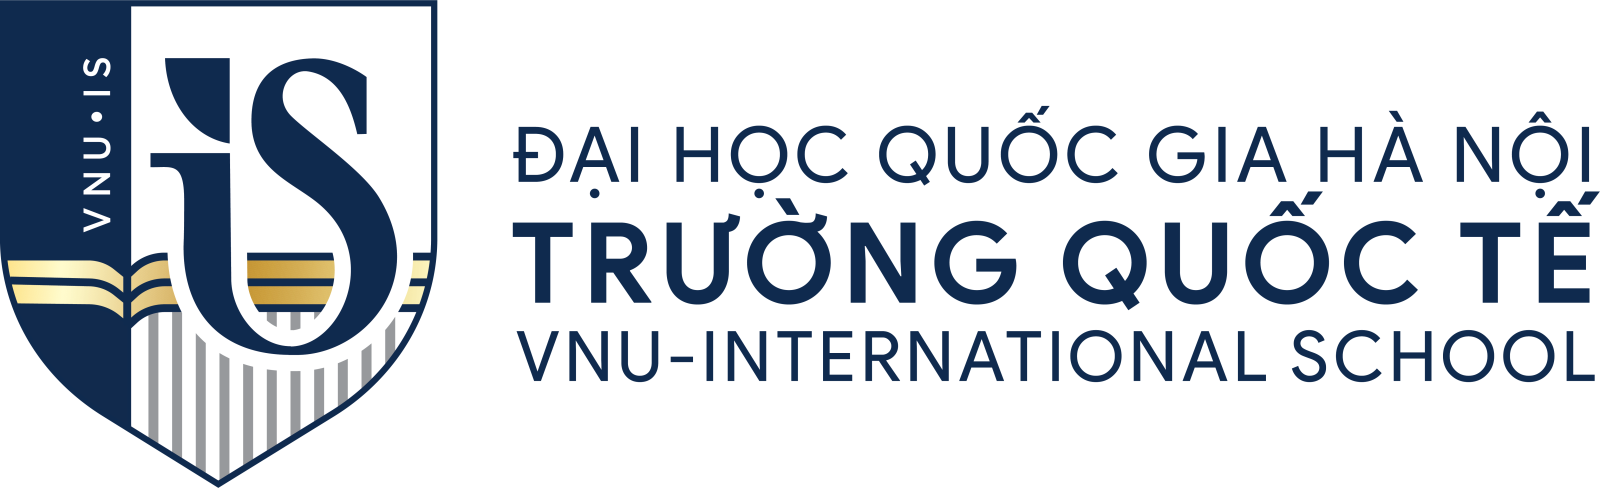 Logo Trường Quốc Tế - ĐHQG Hà Nội